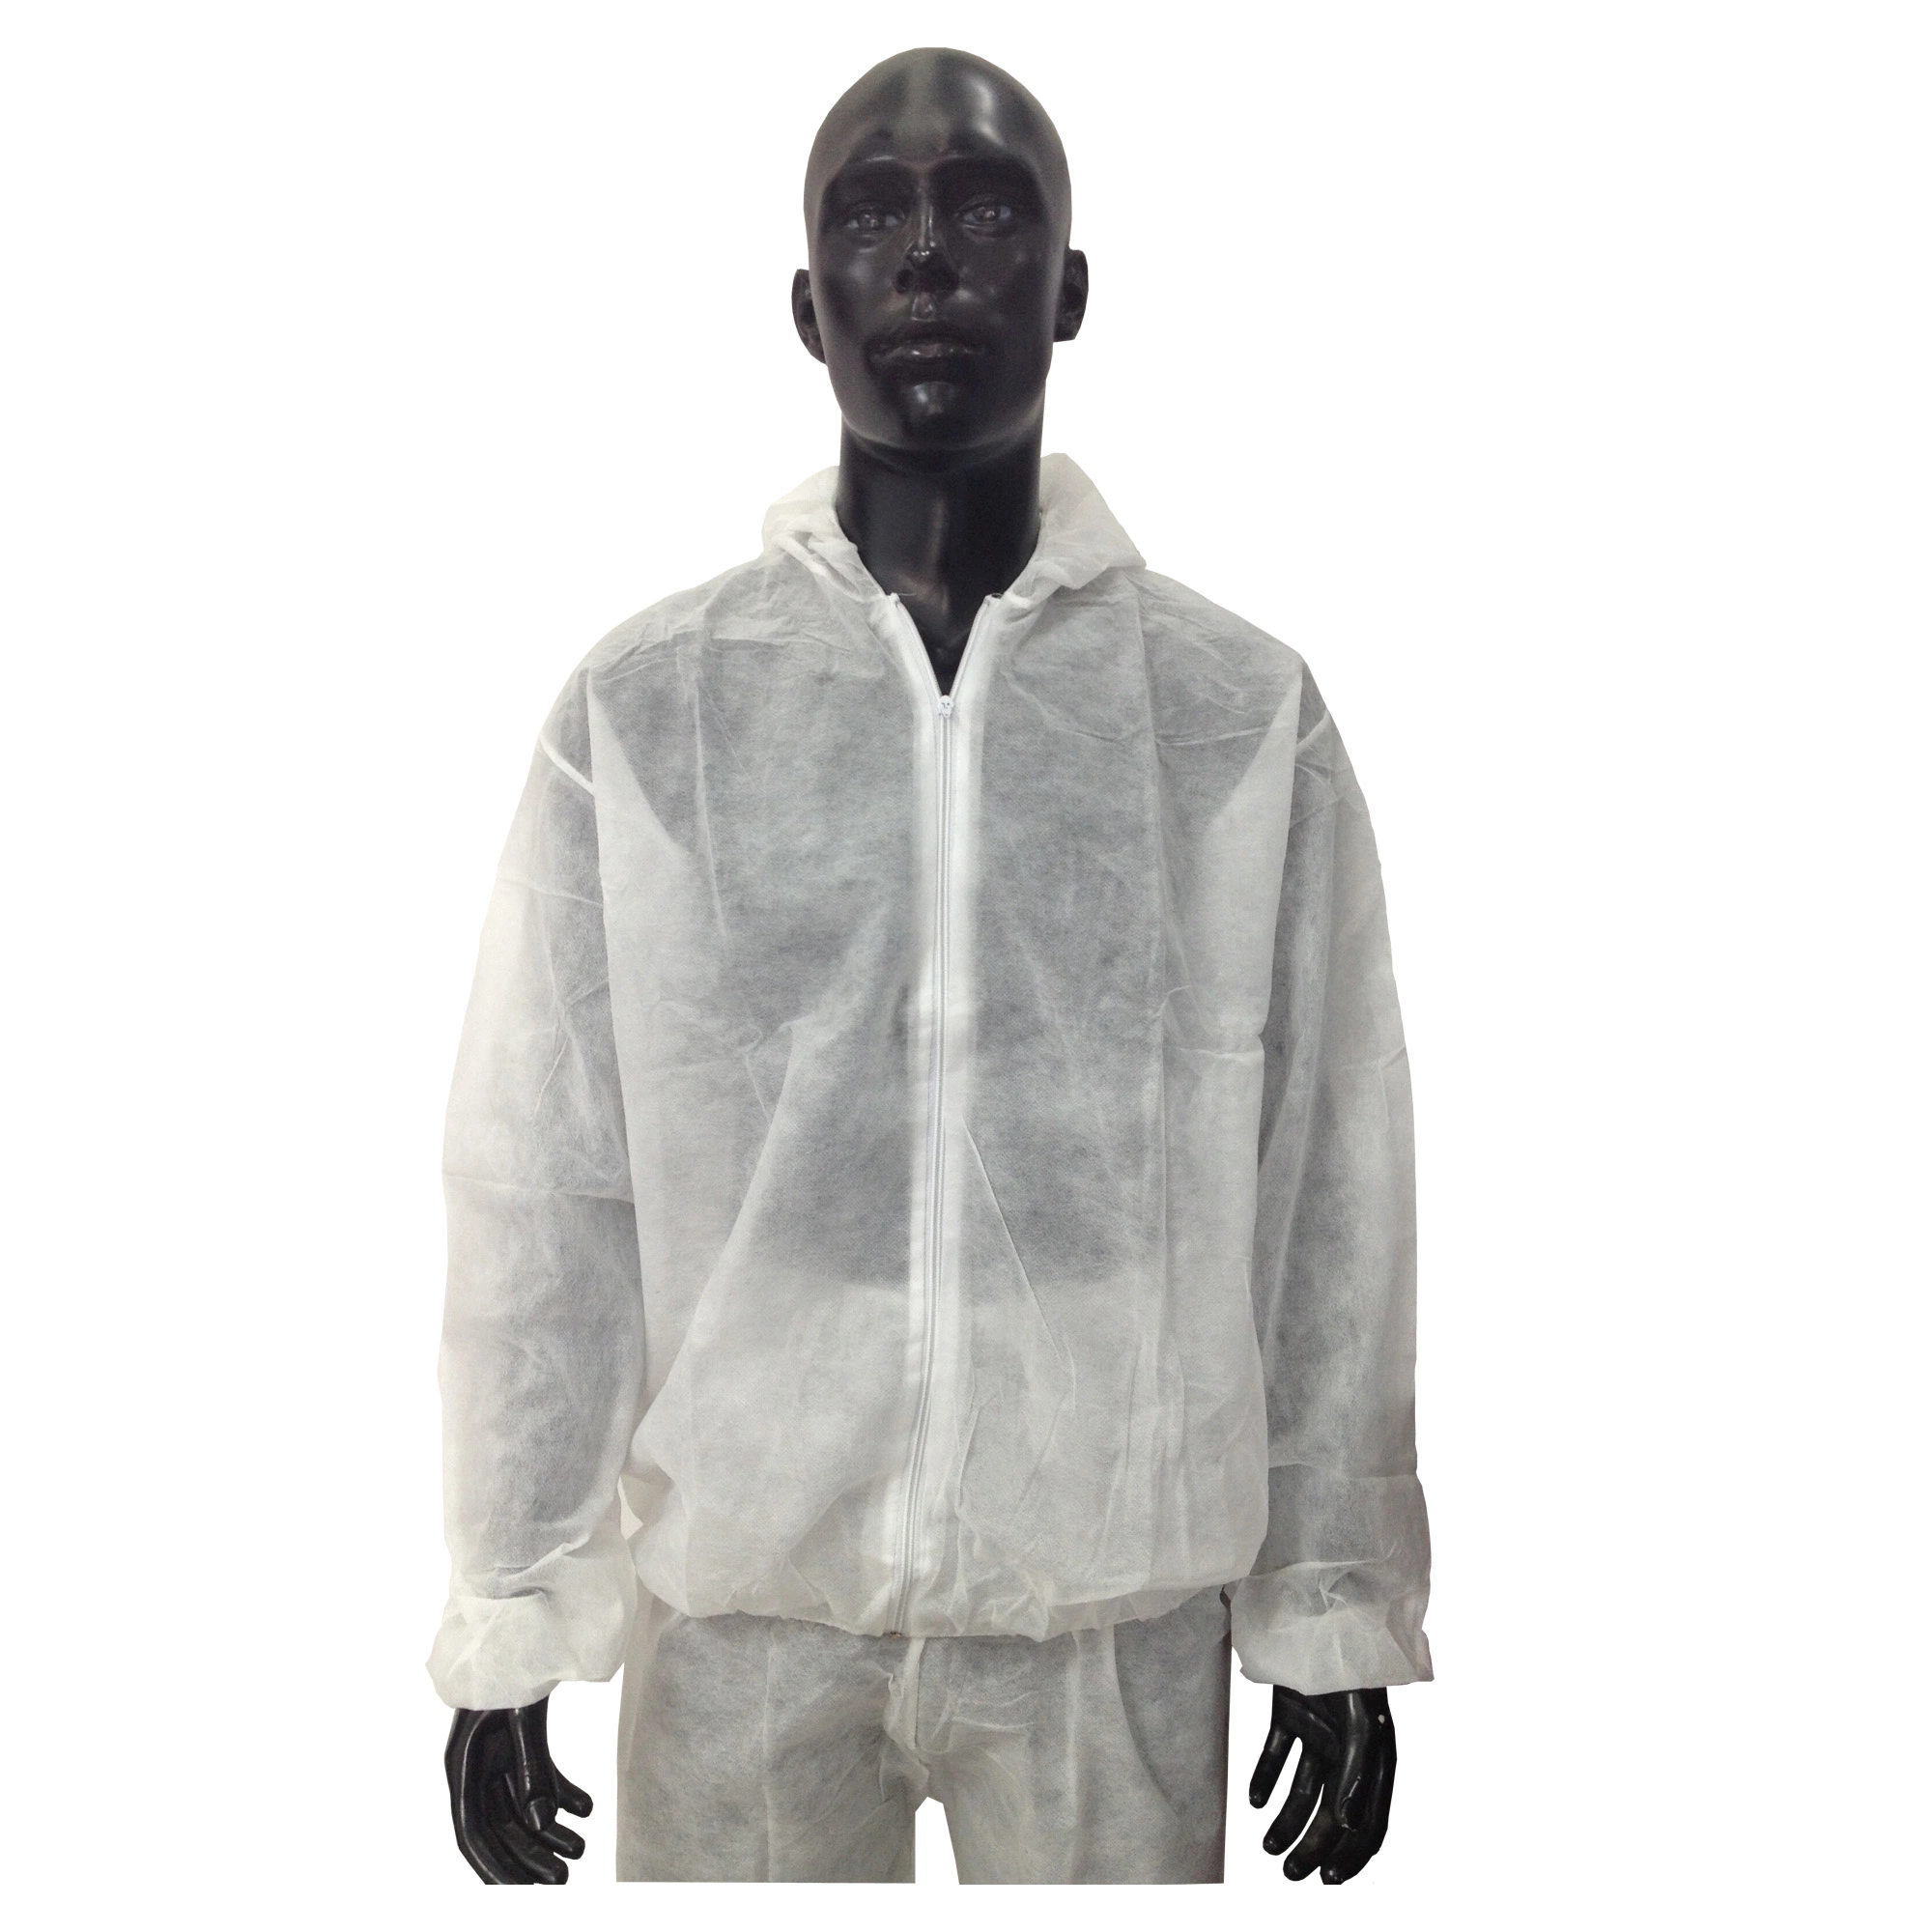 Capa de protecção descartável de não tecidos, vestuário, Casaco jaqueta de segurança